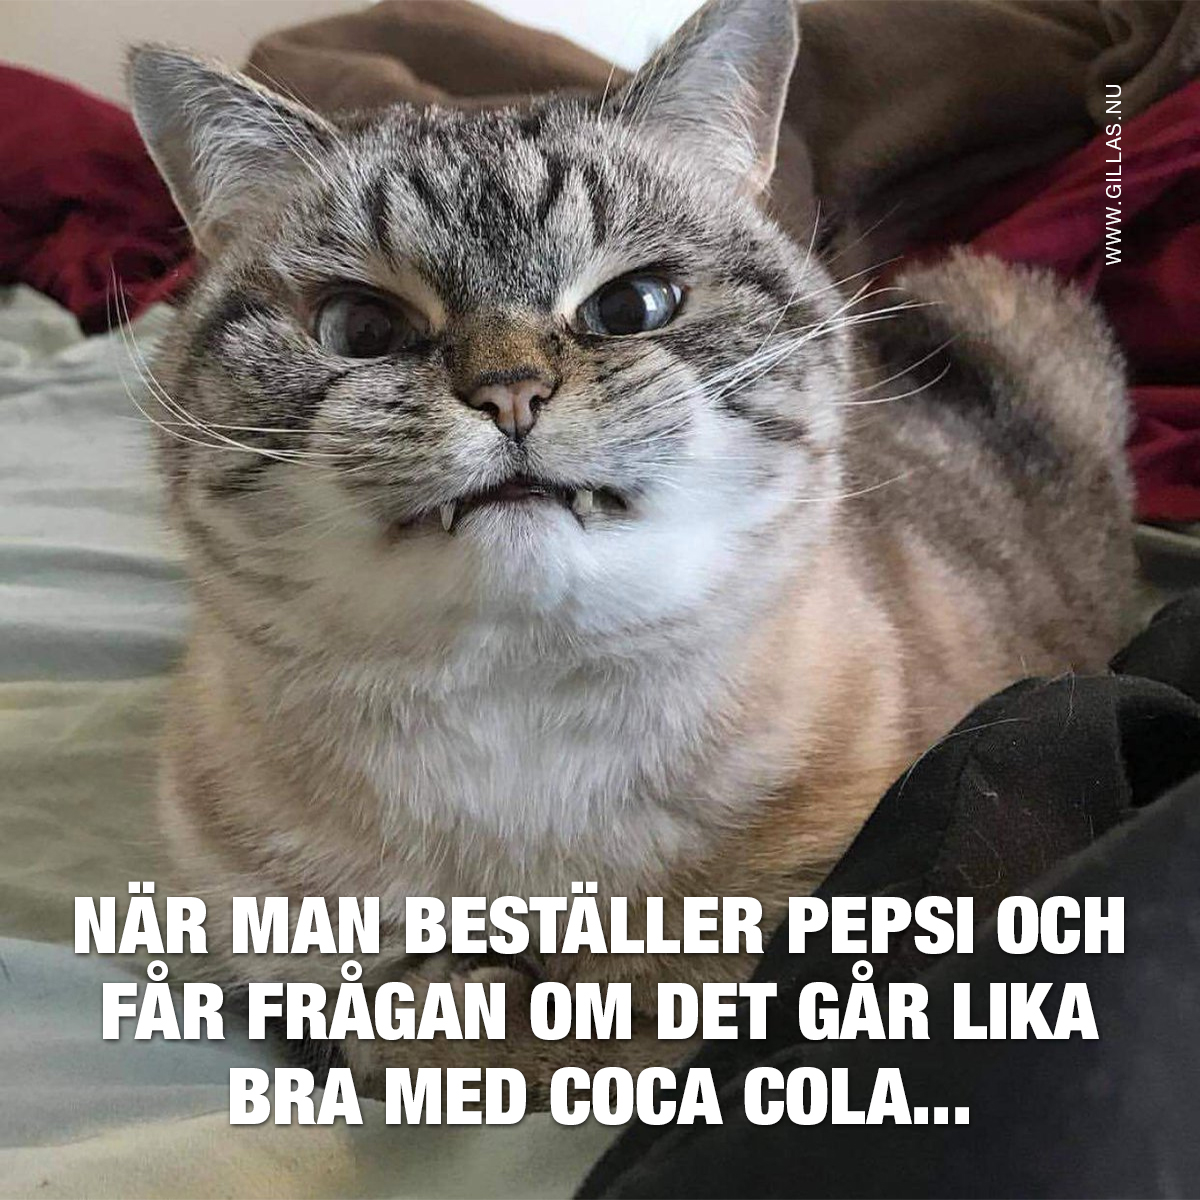 Arg katt - När man beställer Pepsi och får frågan om det går lika bra med Coca Cola